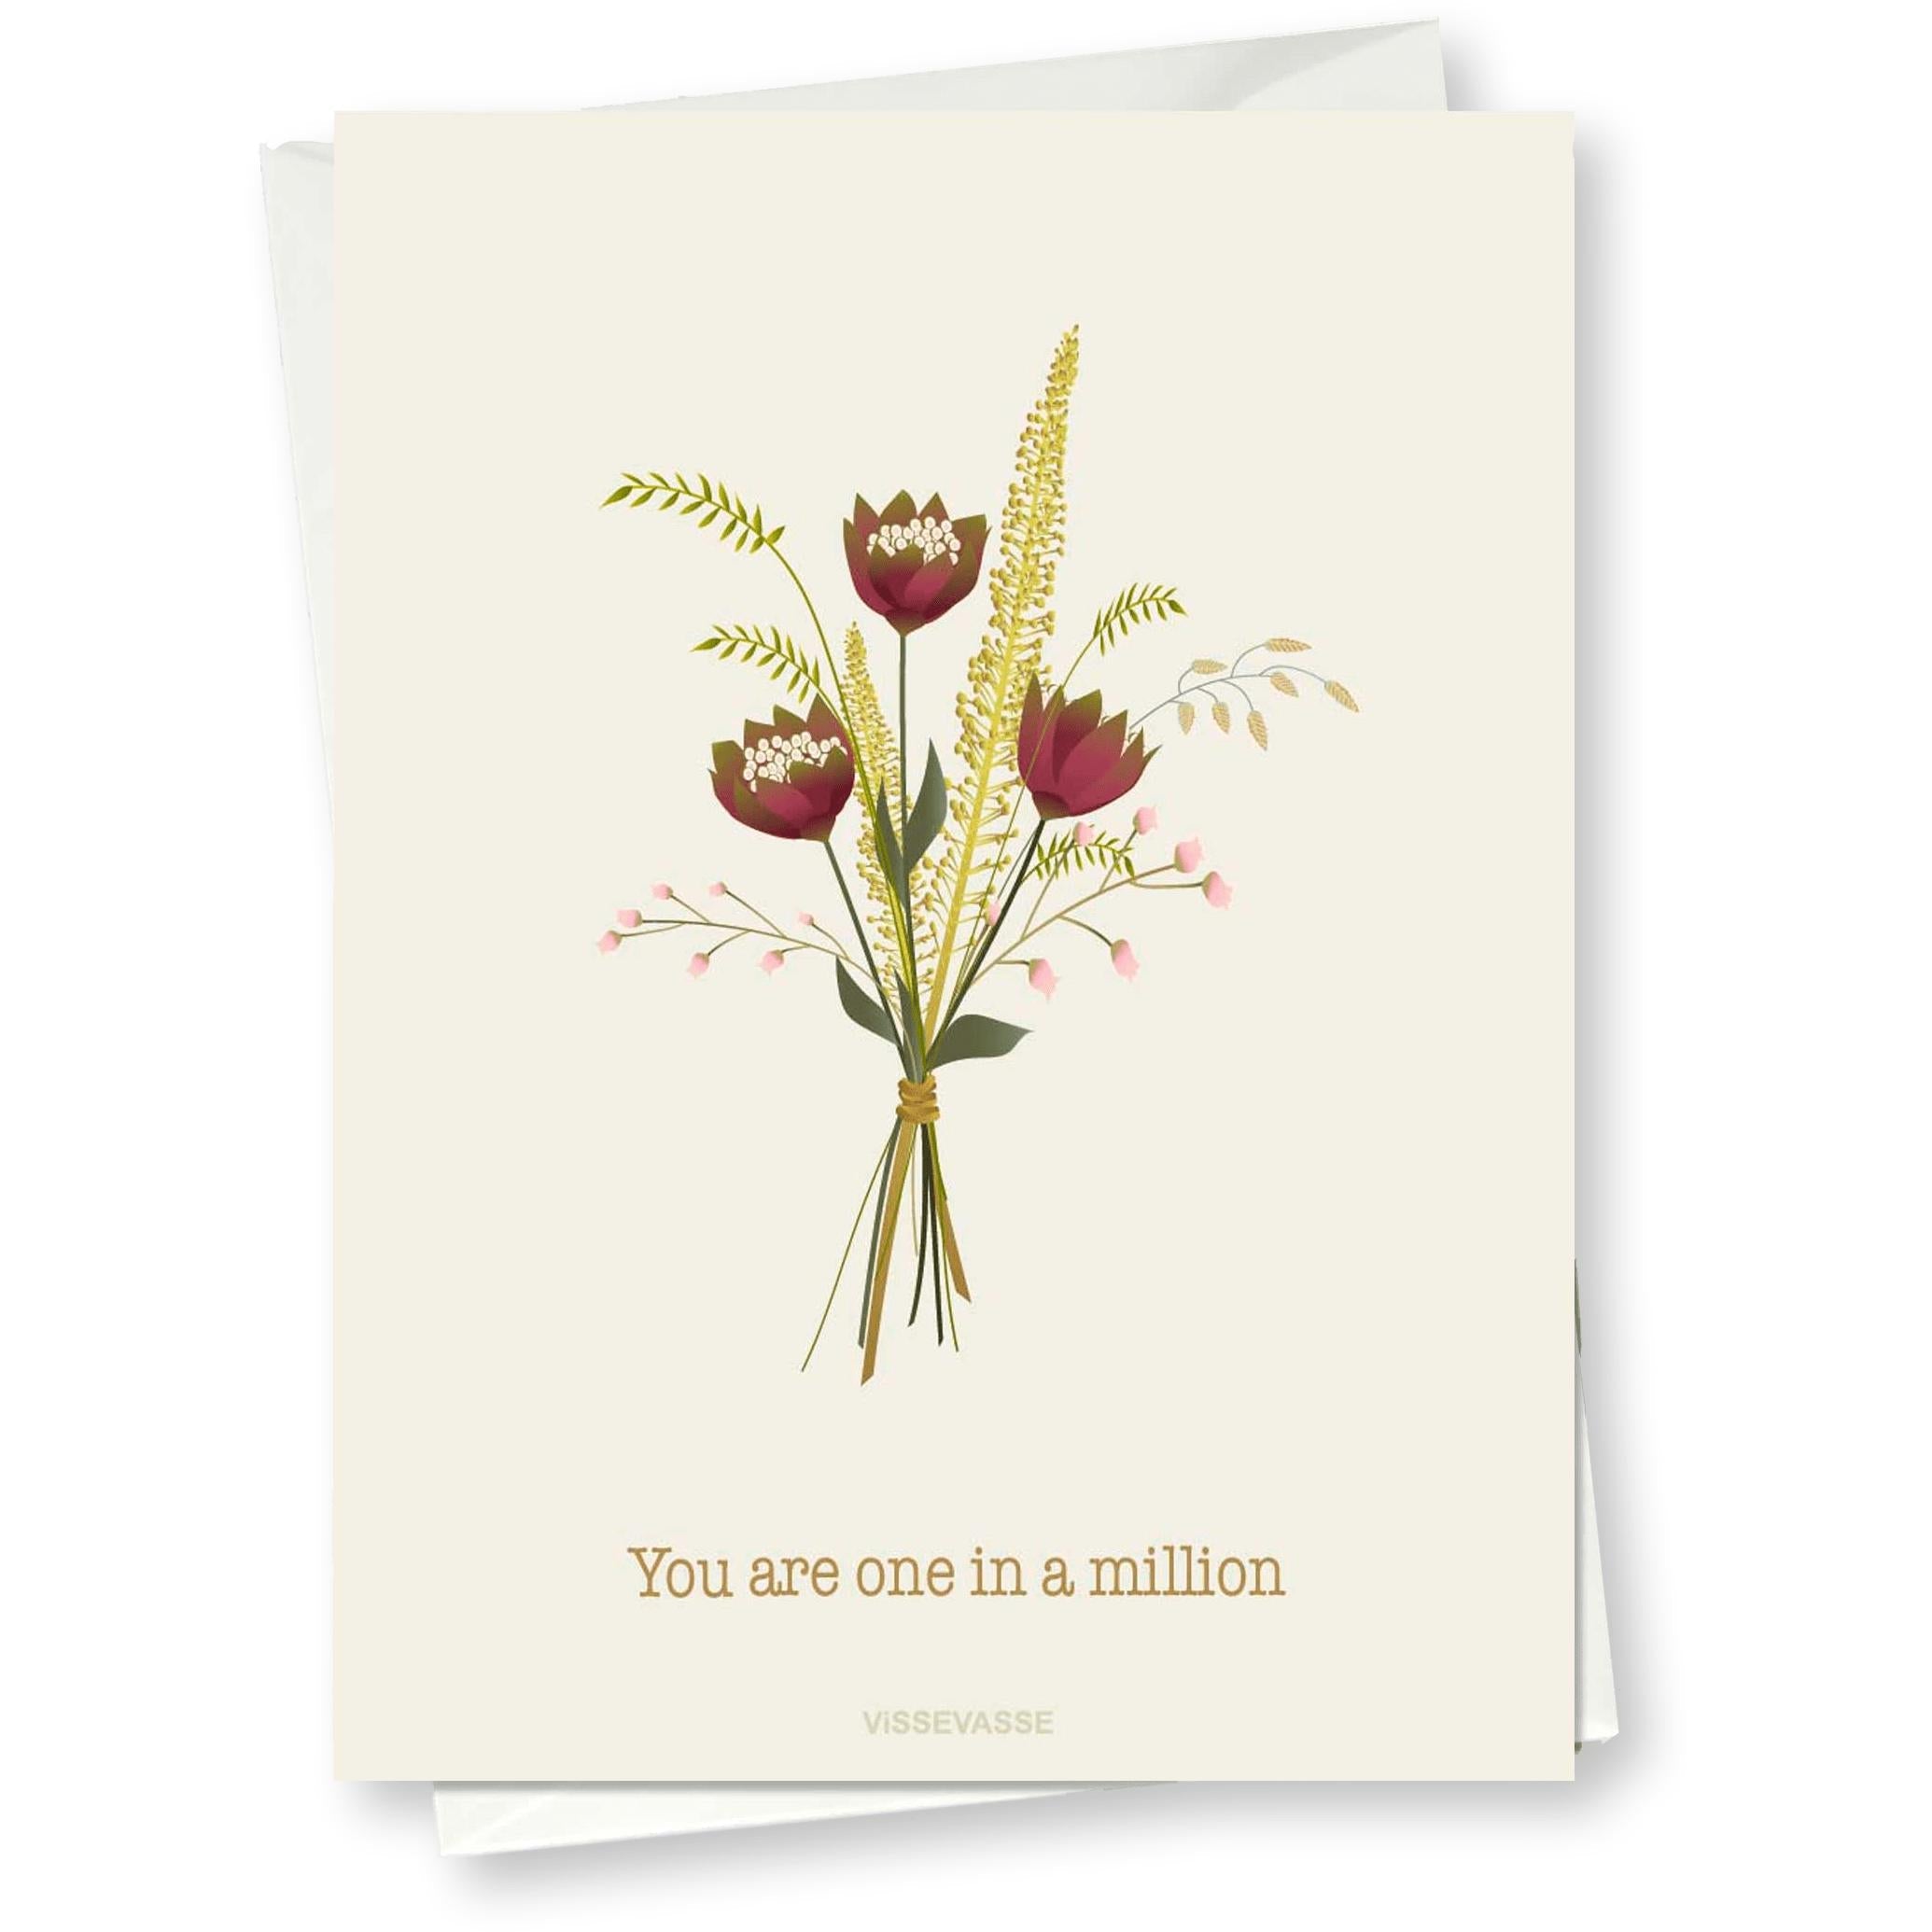 Vissevasse Du er et ud af et million lykønskningskort, 10x15cm